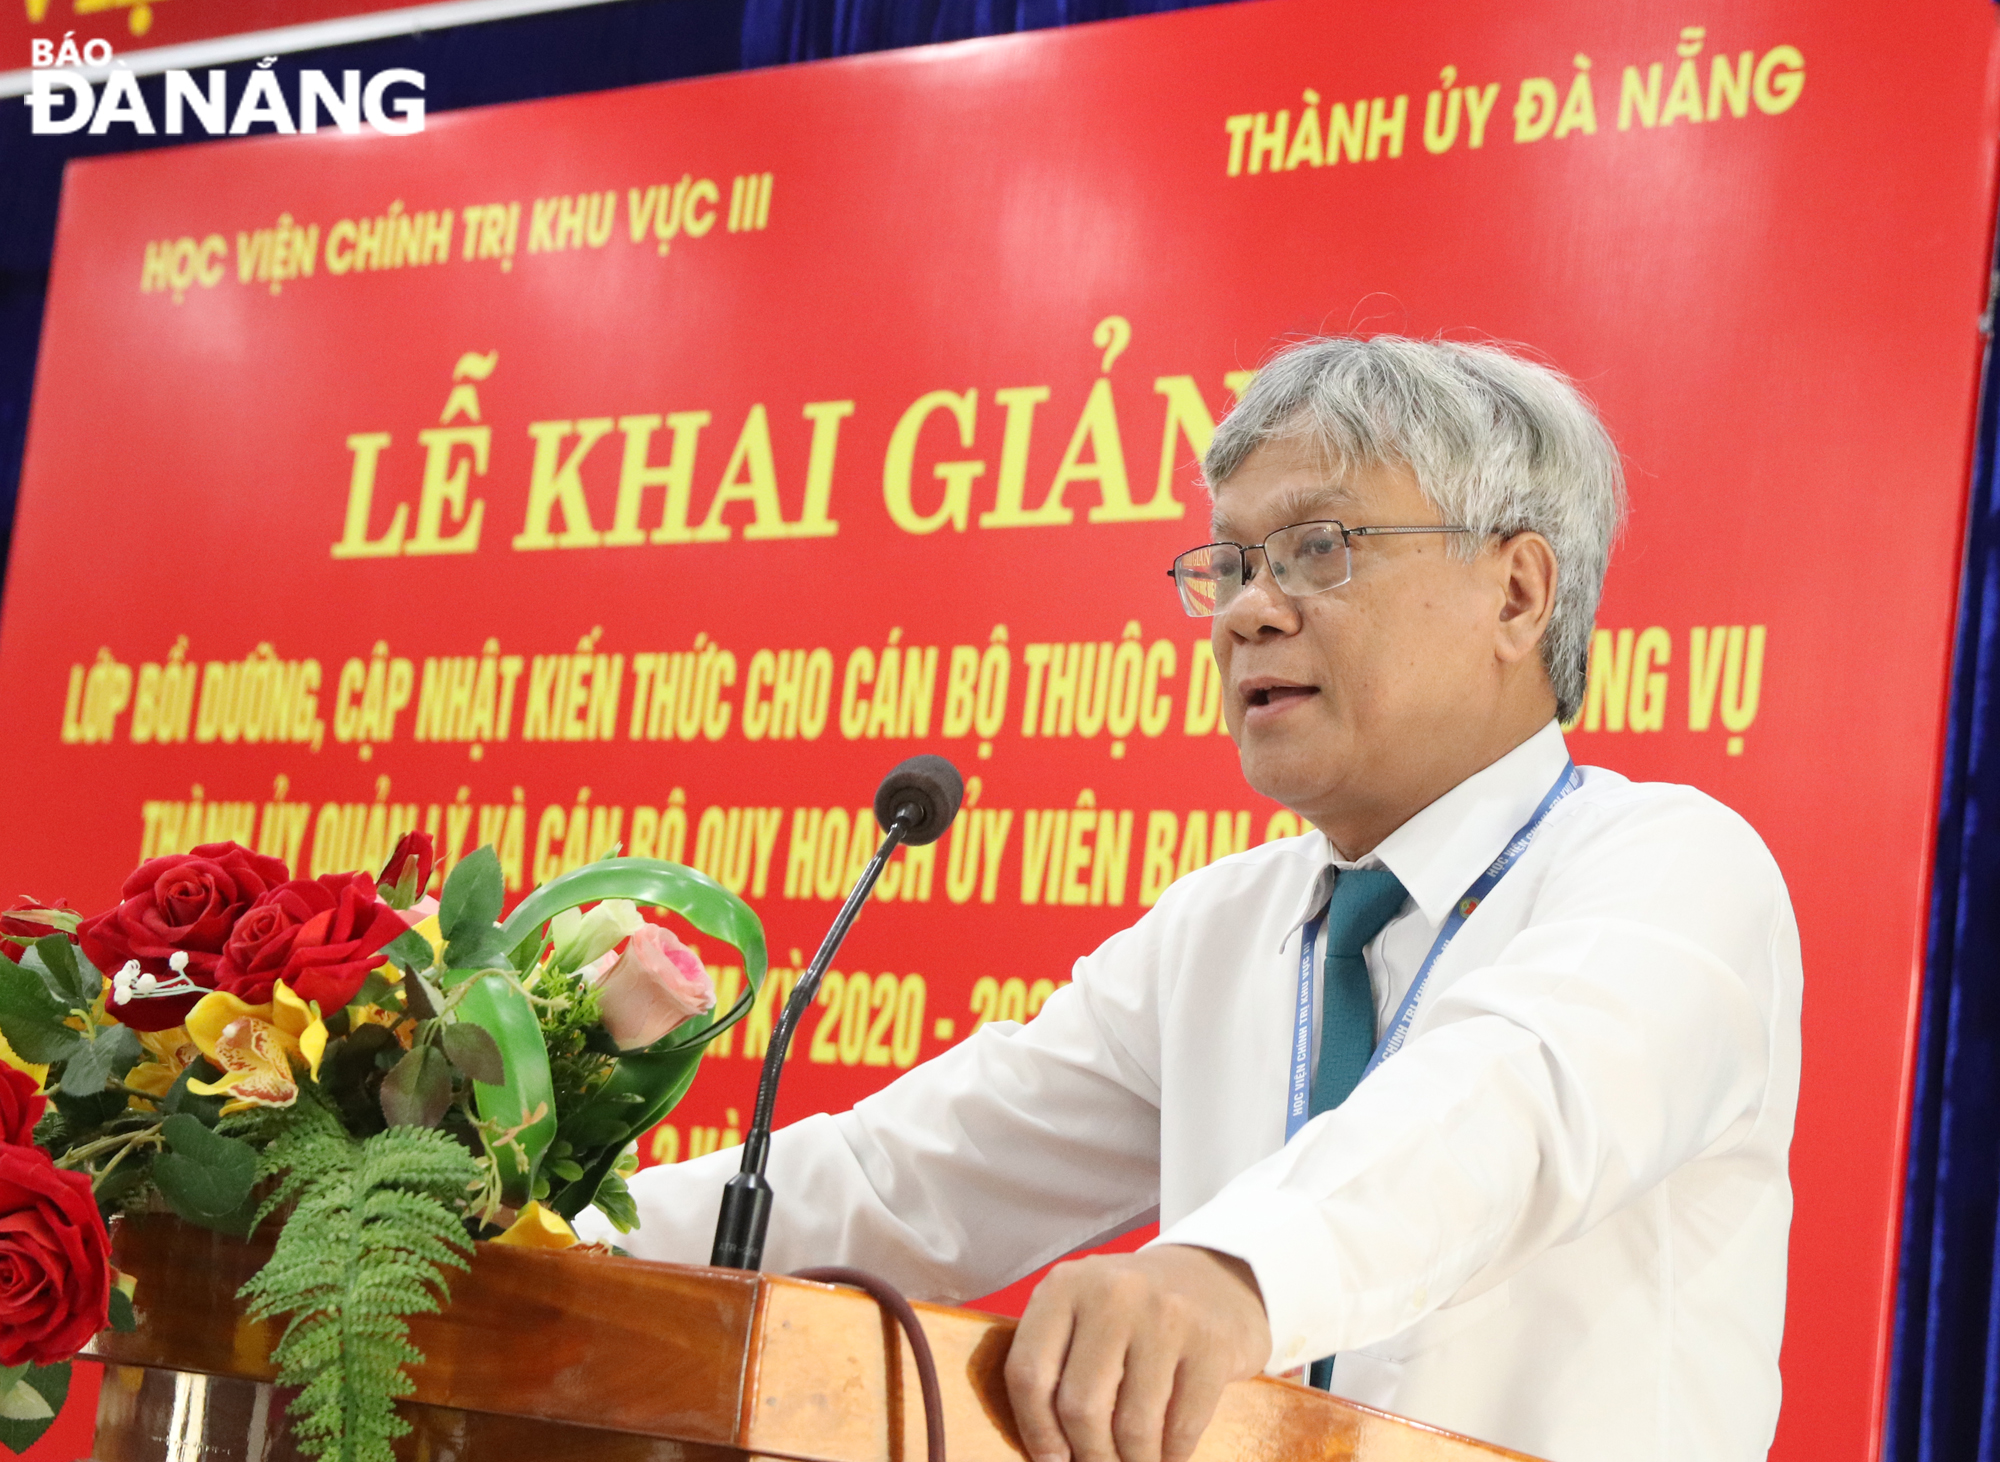 Phó Giám đốc Học viện chính trị khu vực 3 PGS, TS Lê Văn Đính phát biểu khai giảng lớp học. Ảnh: TRỌNG HUY